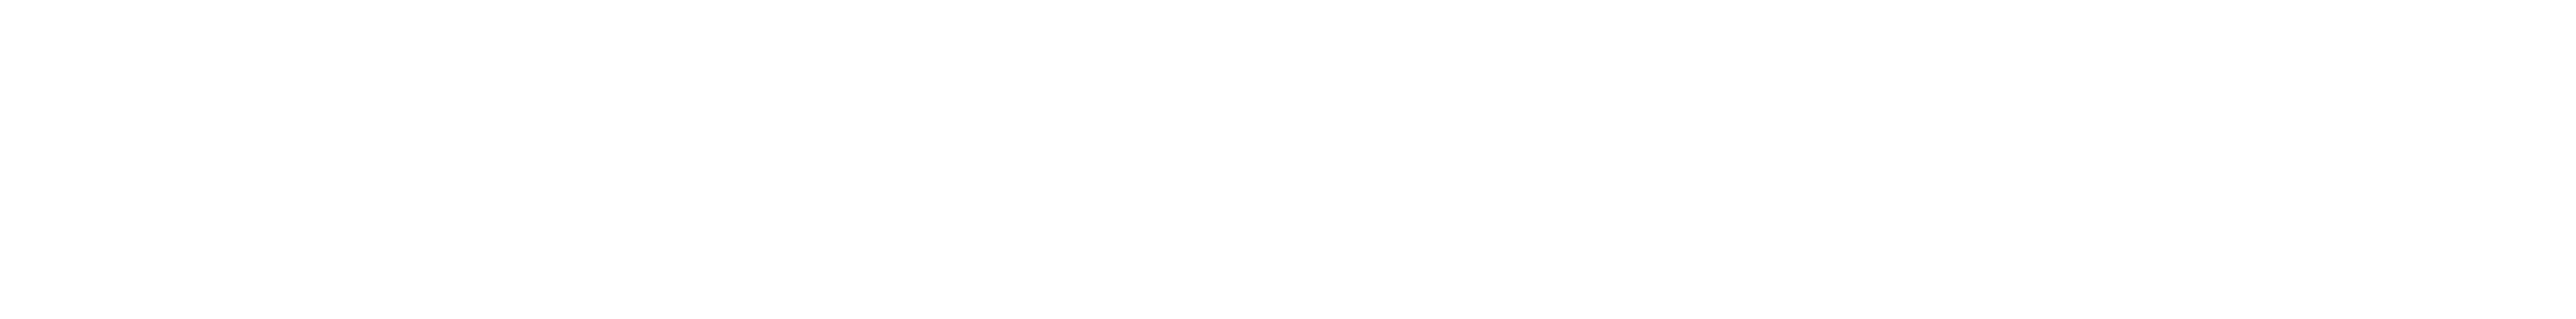 Schneegestöber – Baumschnitt wann